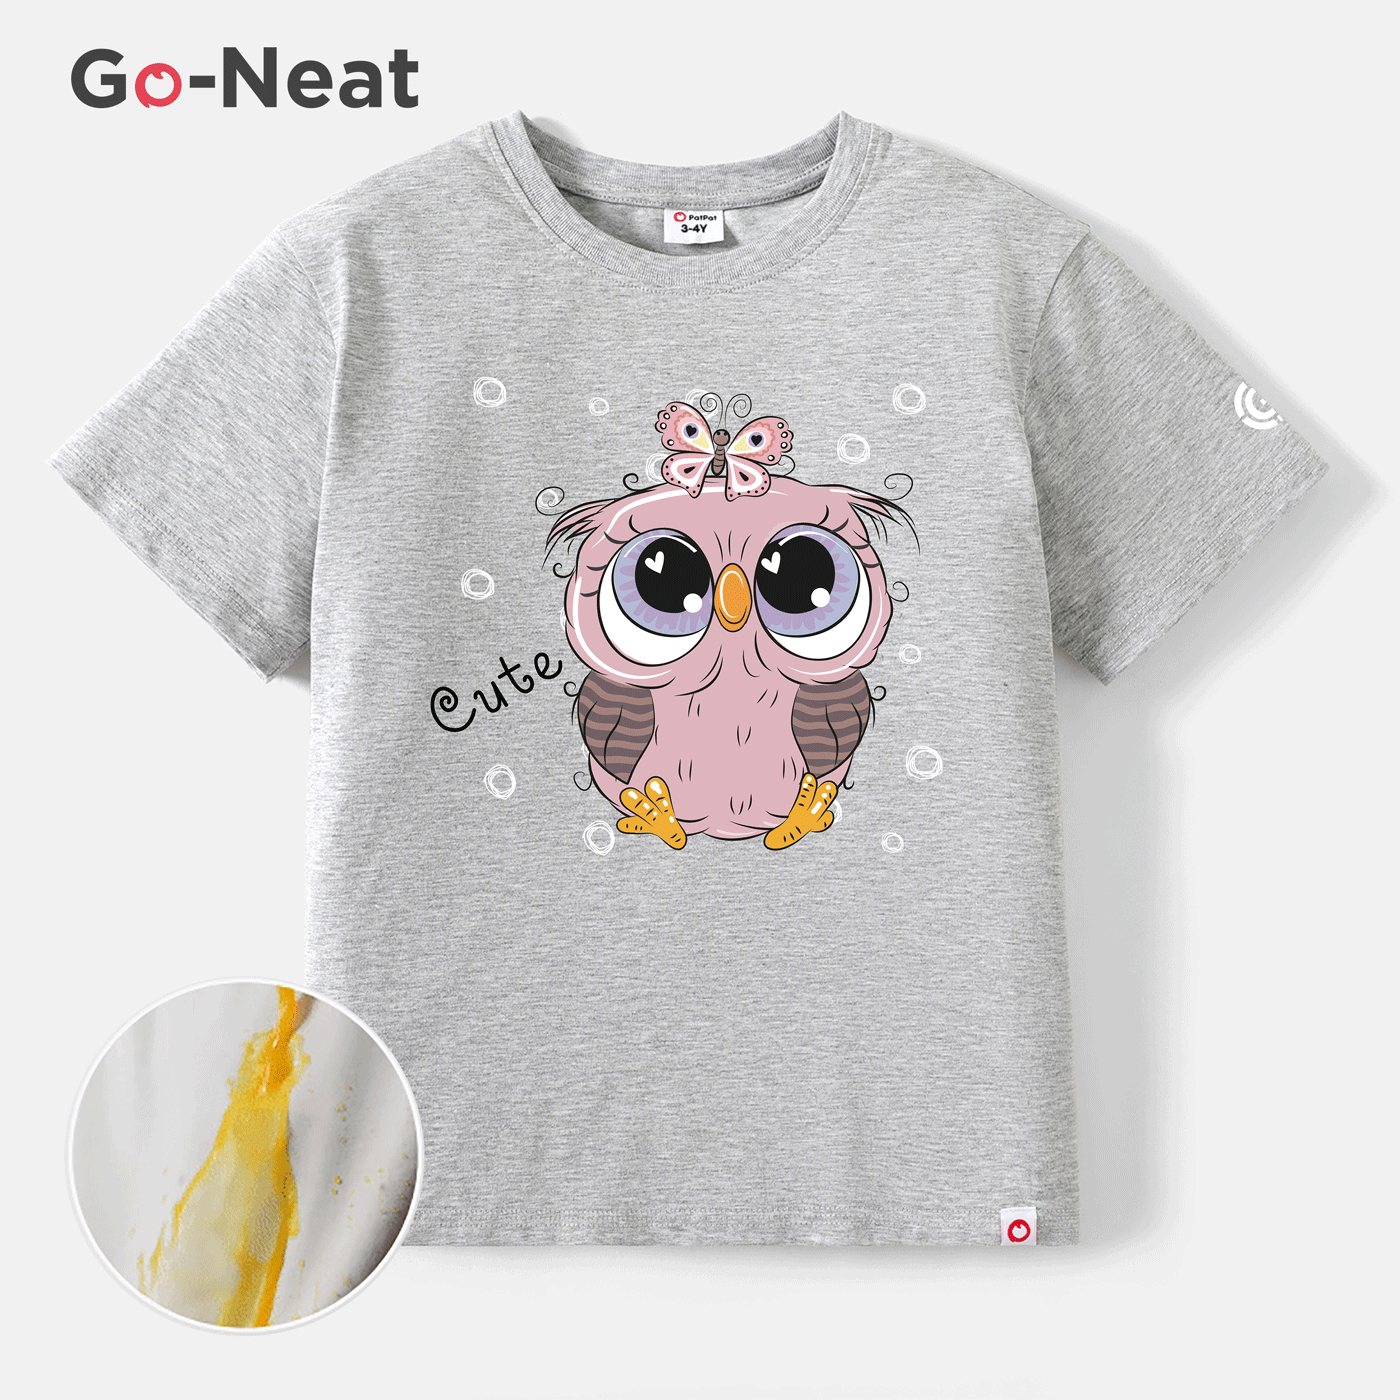 Go-Neat Resistente a manchas Criança Menina Estampado animal Manga curta T-shirts Cinzento Claro